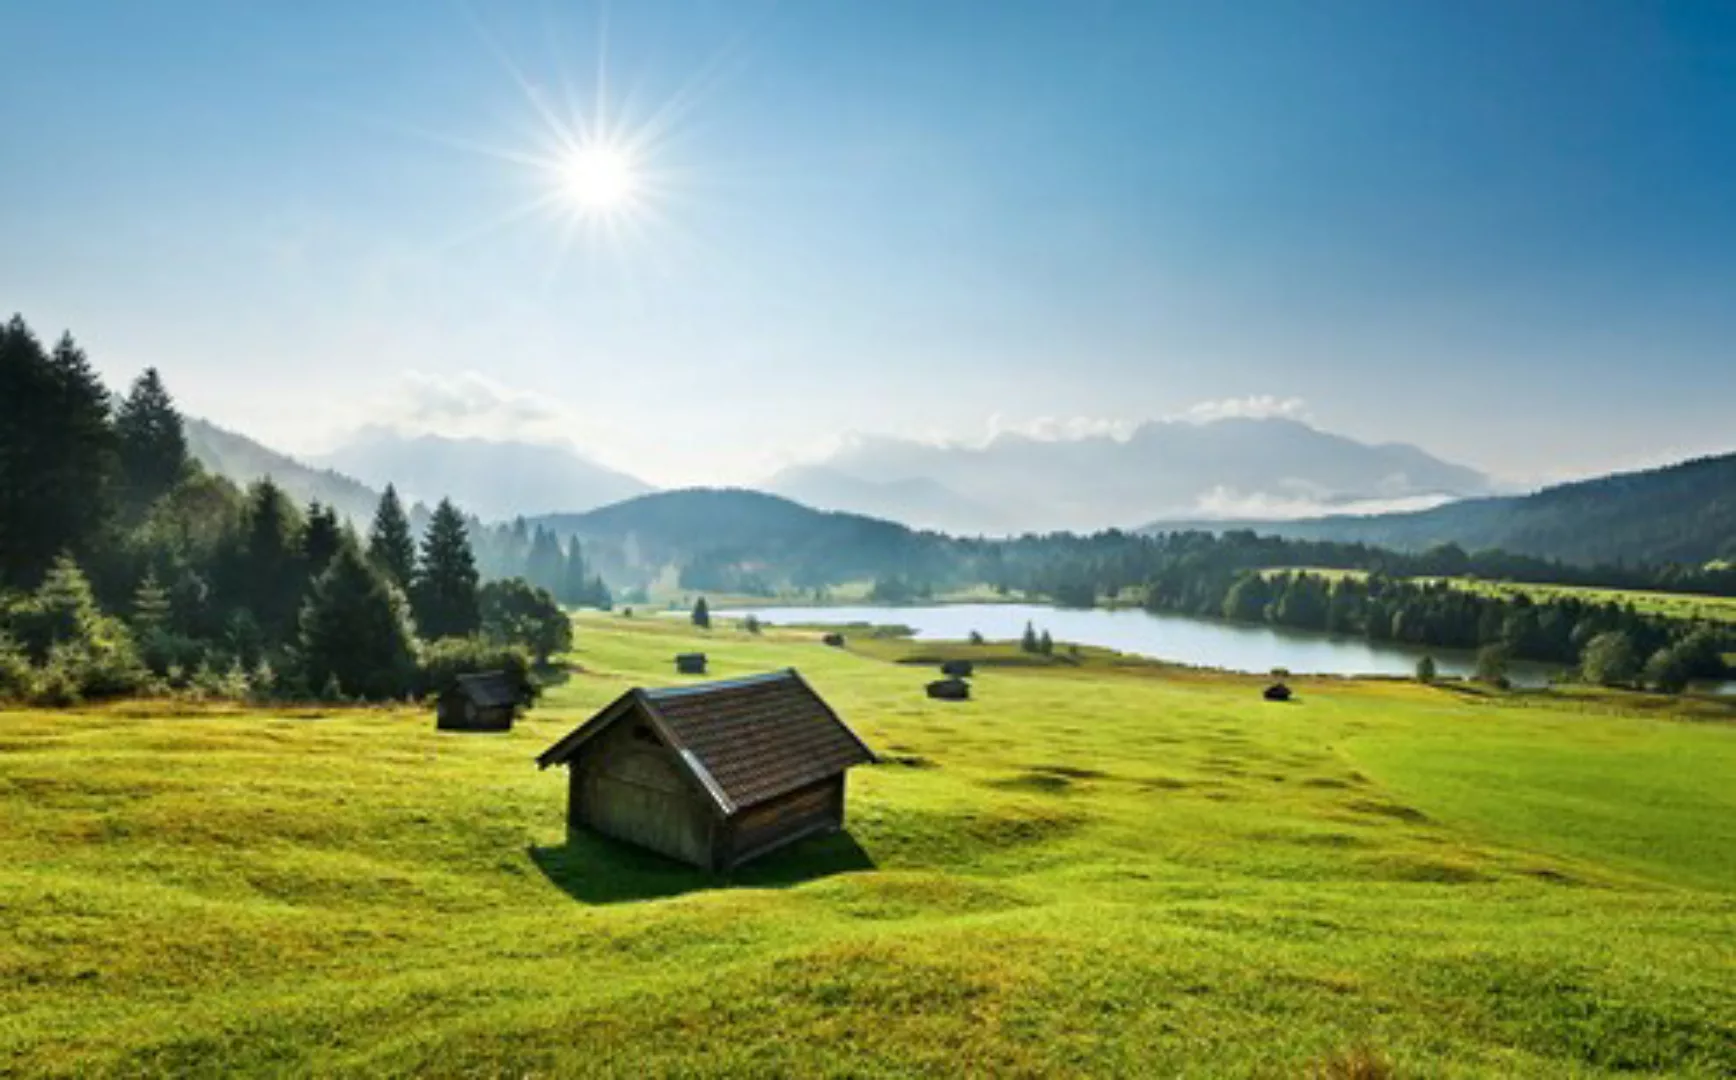 KOMAR Vlies Fototapete - Bergwiese vor Karwendel - Größe 450 x 280 cm mehrf günstig online kaufen